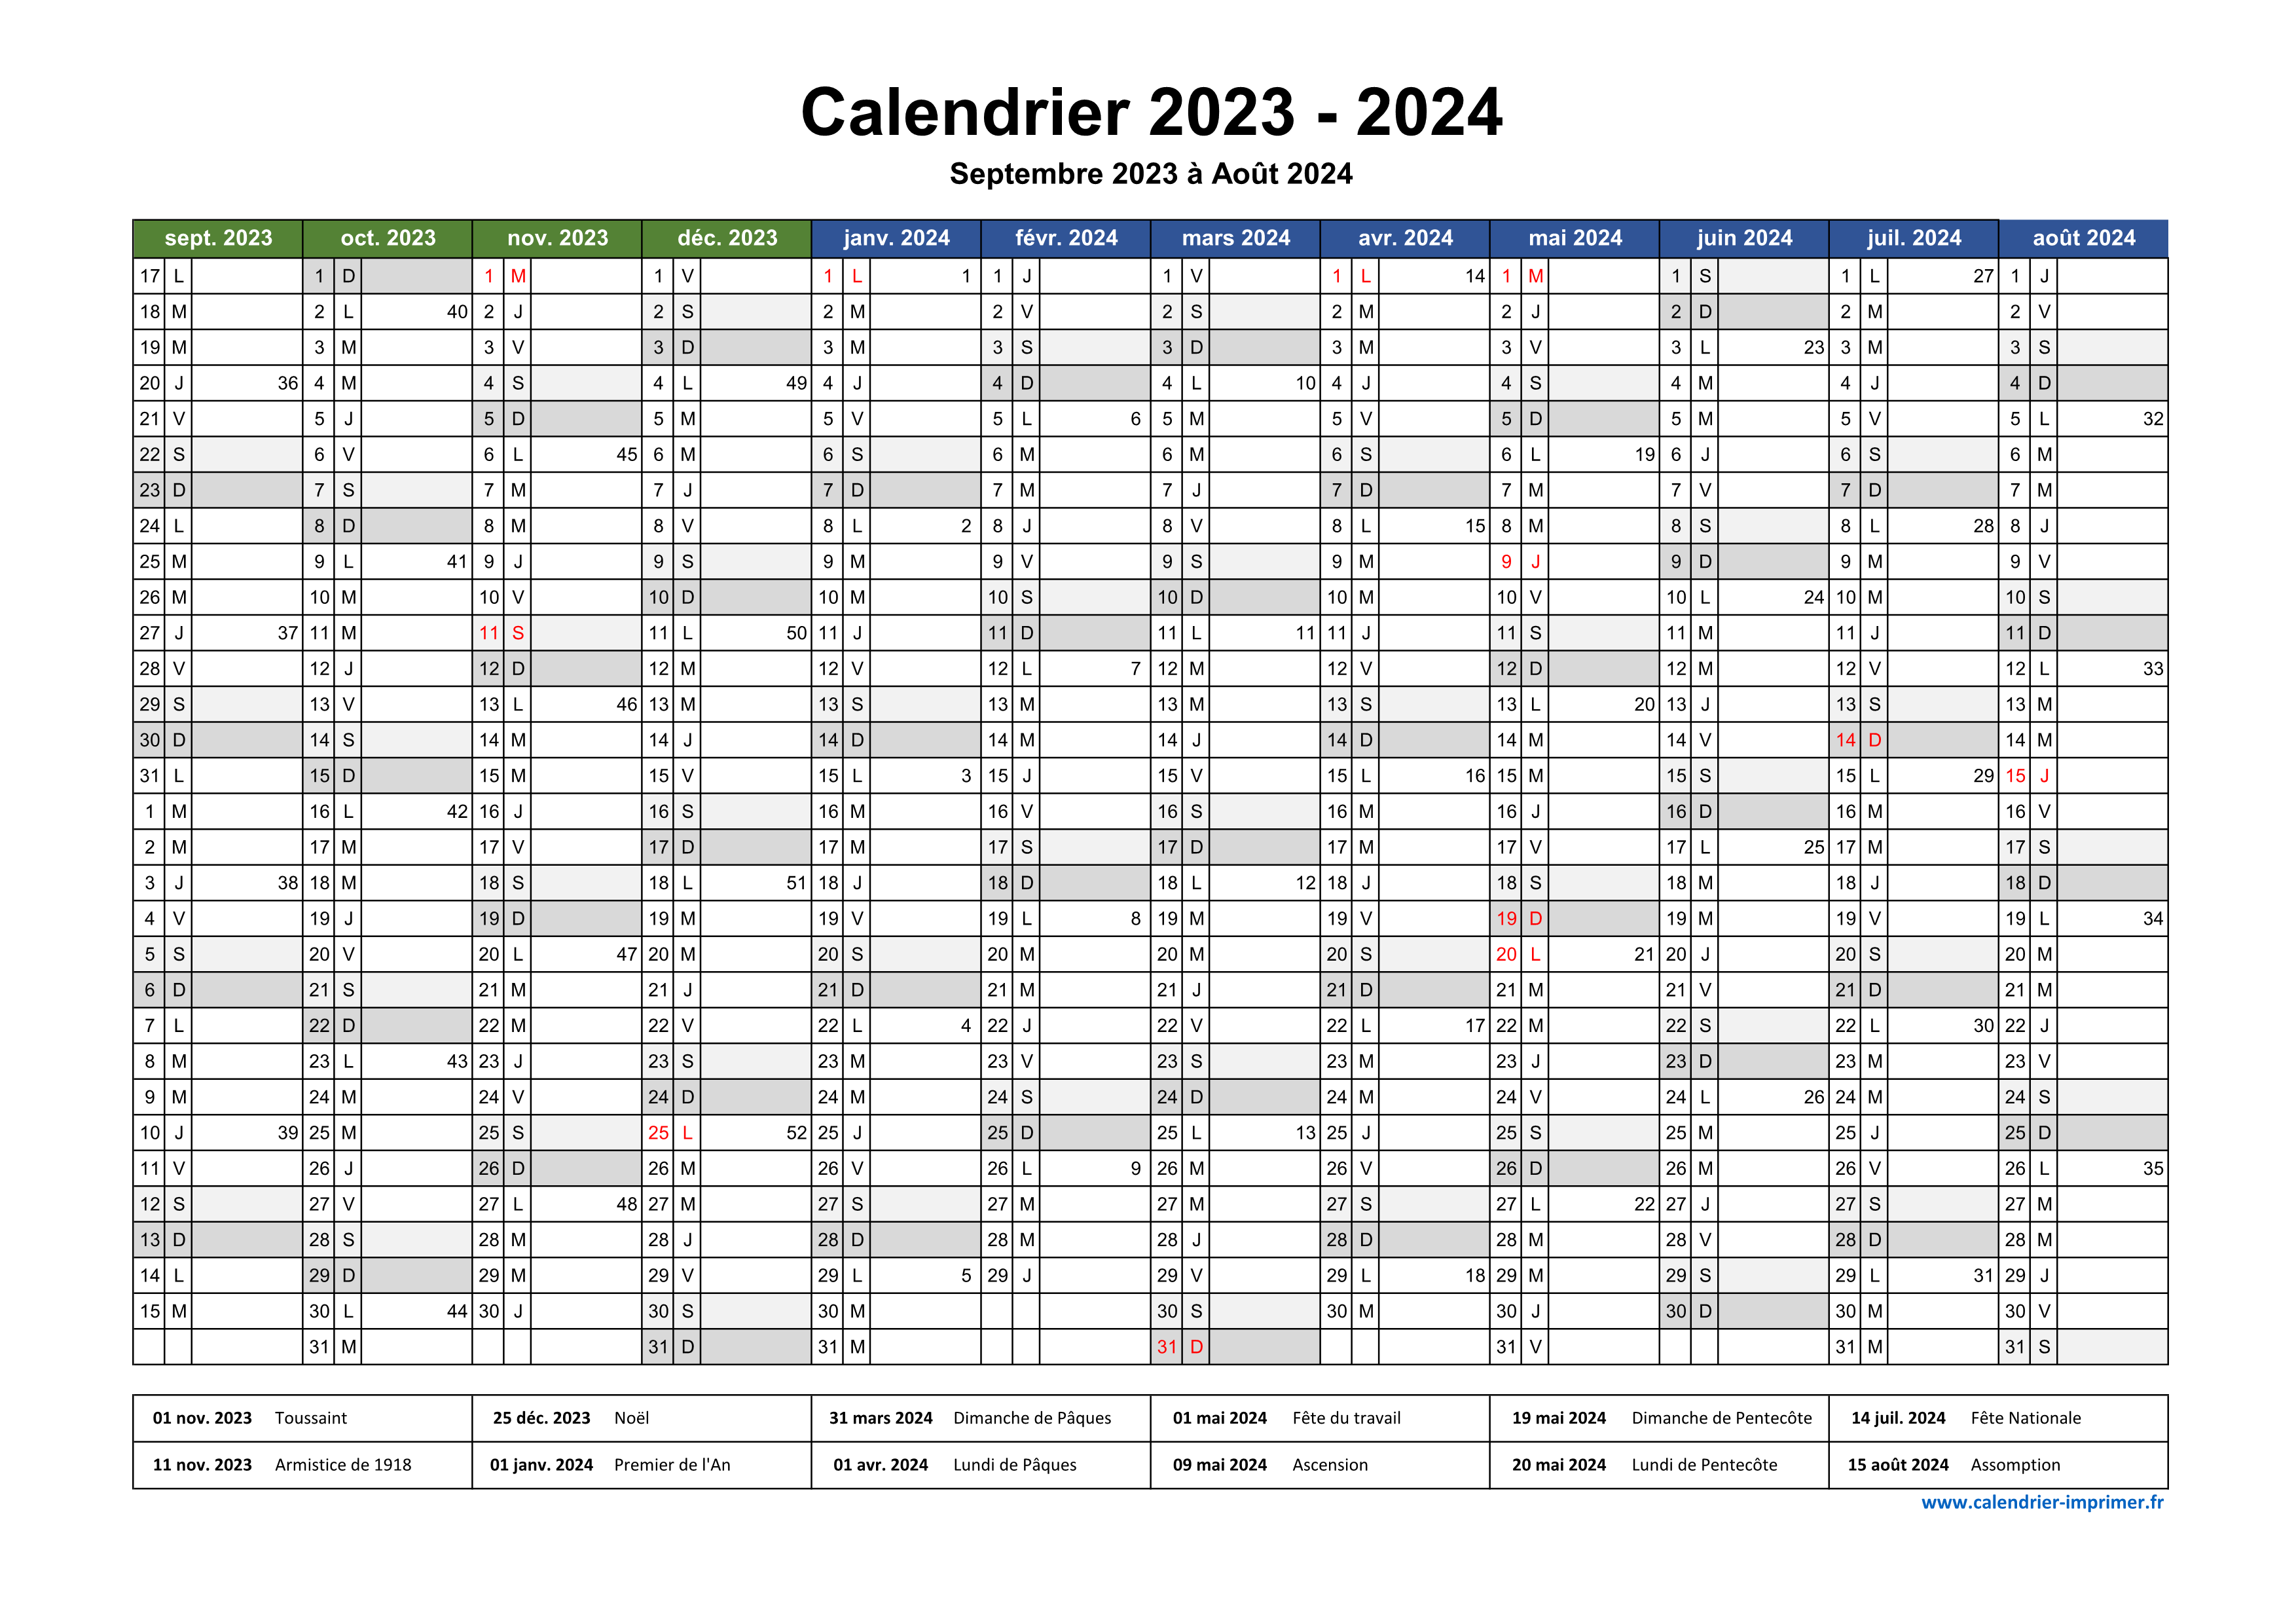 Calendrier 2023-2024 (gratuit, à imprimer)